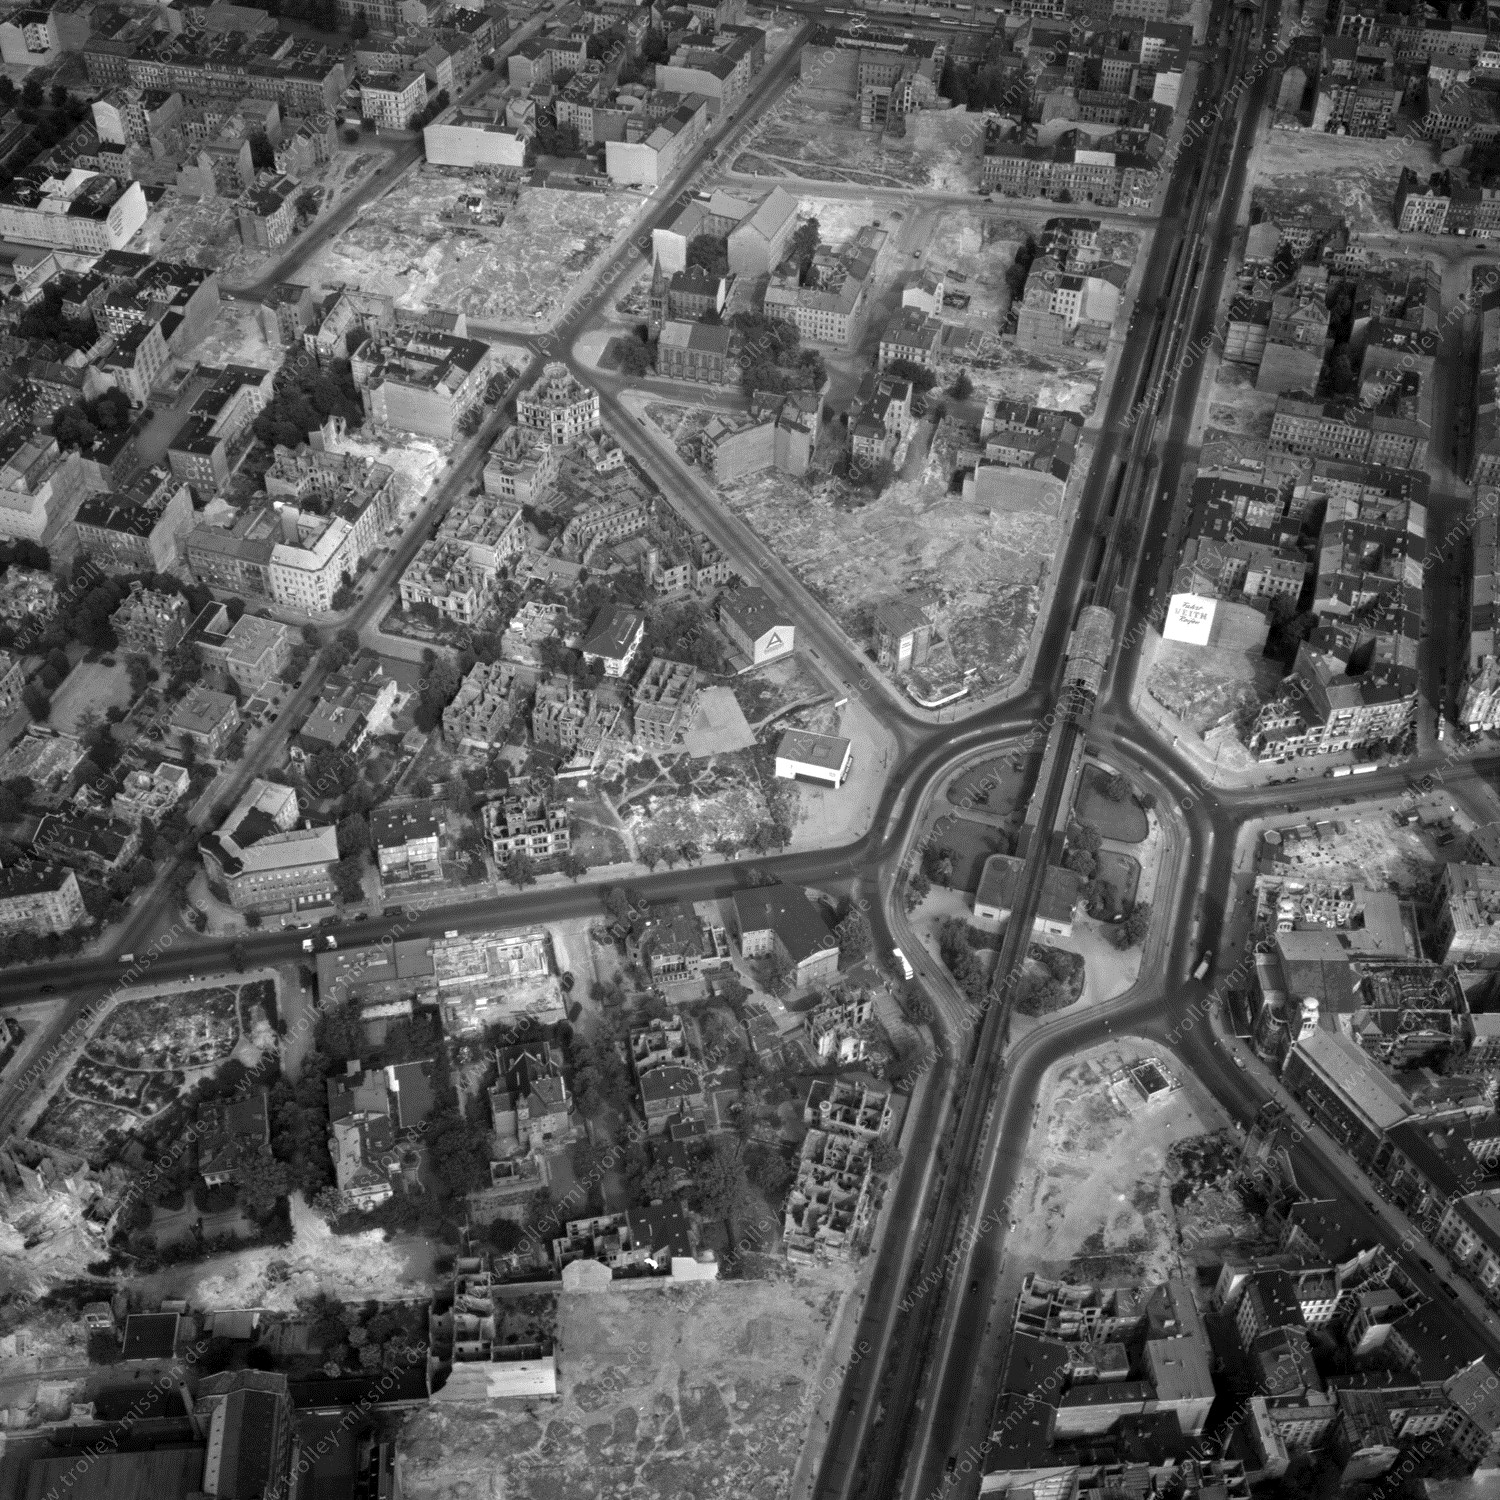 Alte Fotos und Luftbilder von Berlin - Luftbildaufnahme Nr. 01 - Historische Luftaufnahmen von West-Berlin aus dem Jahr 1954 - Flugstrecke Whiskey